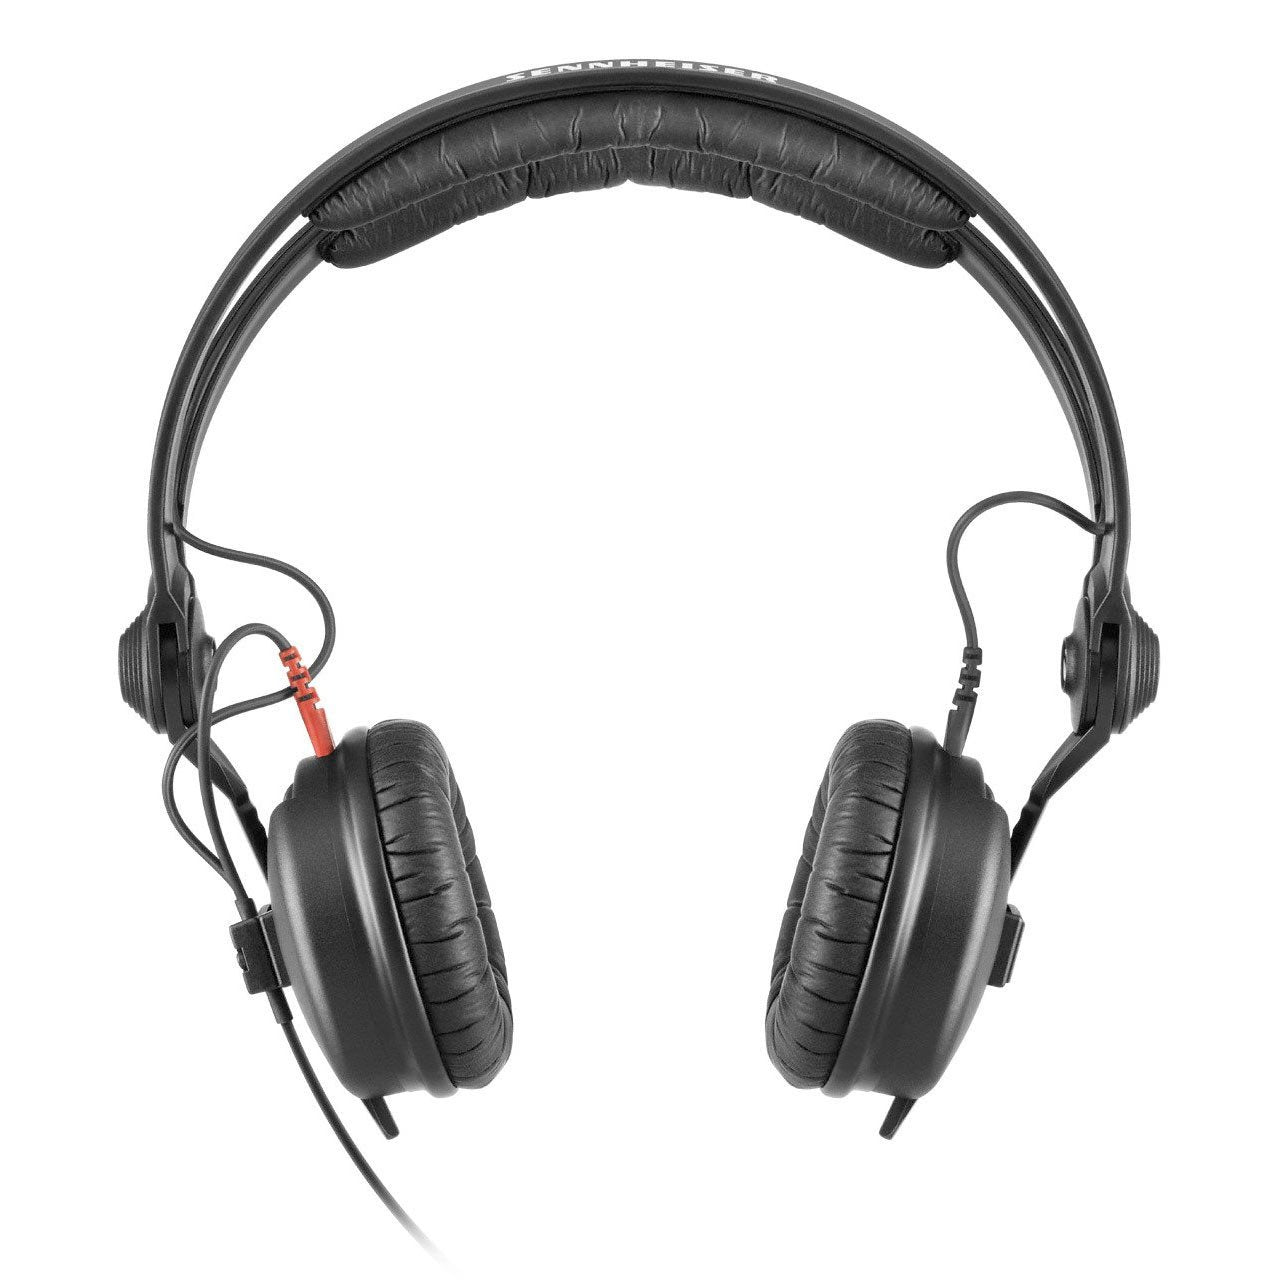 Closed Headphones - Sennheiser HD 25 On Ear DJ Headphone